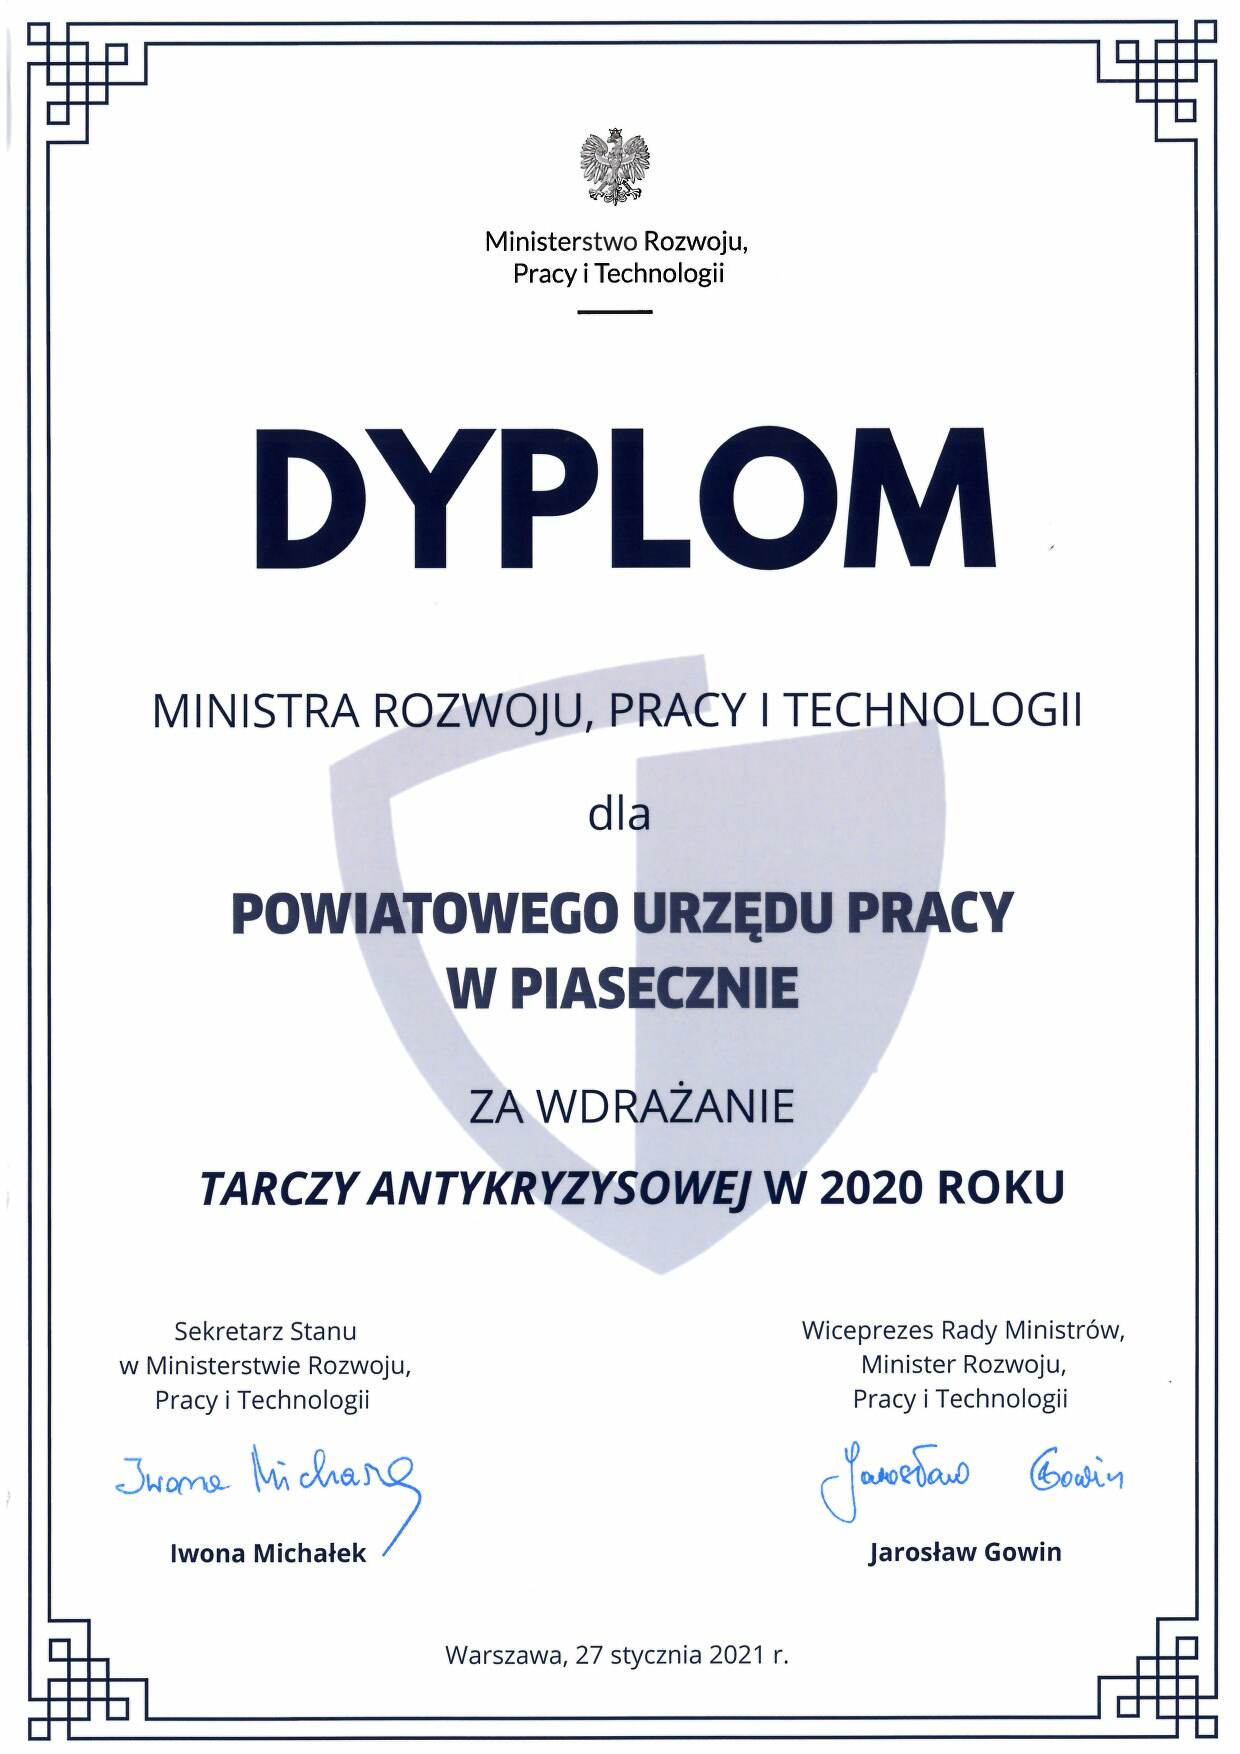 Dyplom za wdrażanie Tarczy Antykryzysowej w 2020r dla Powiatowego Urzędu Pracy w Piasecznie